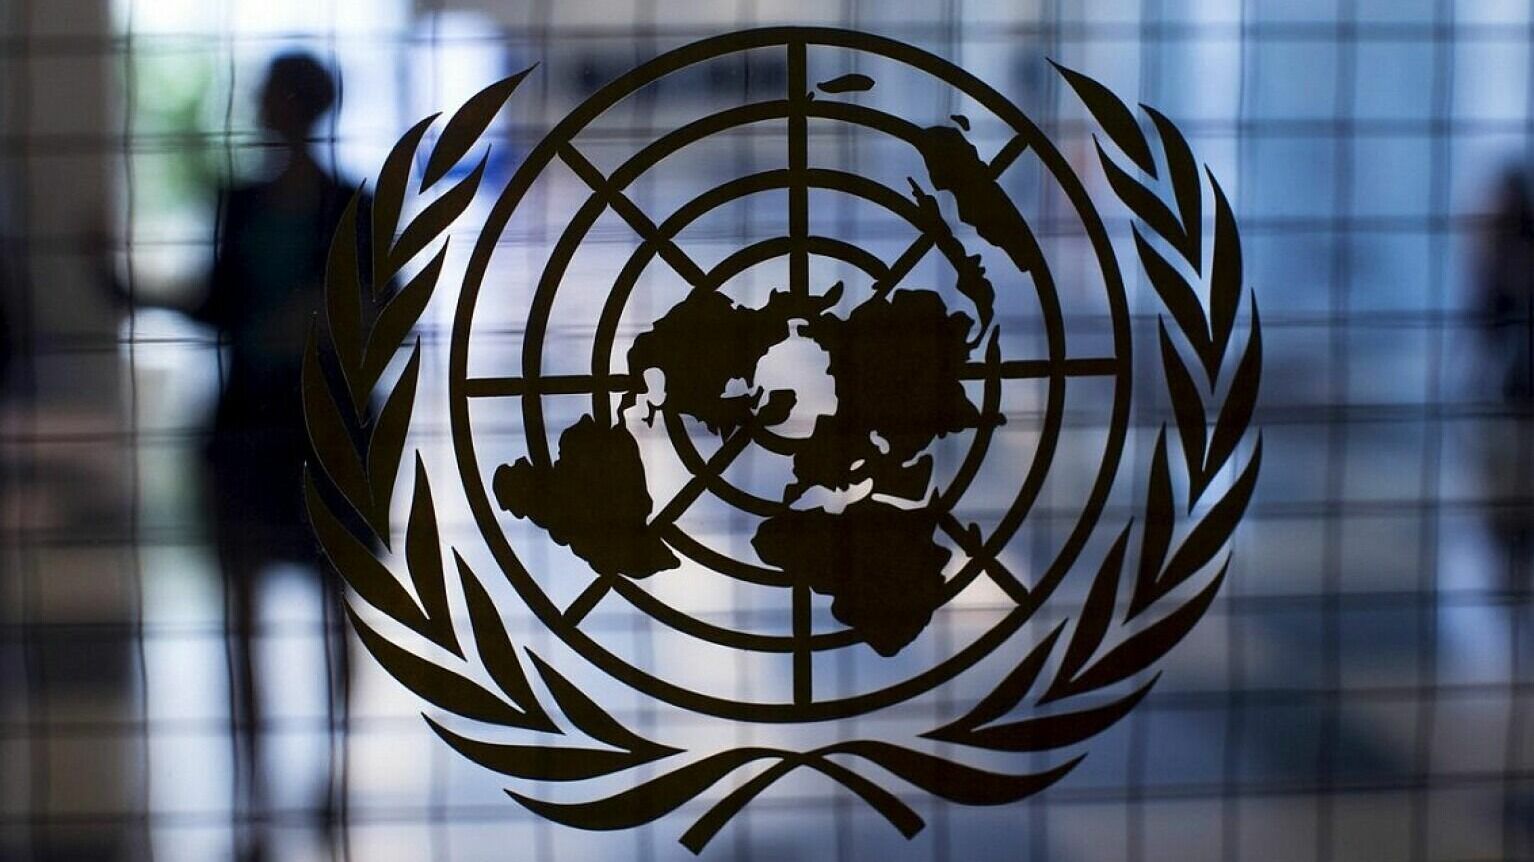 Москва запросила заседание Совбеза ООН по проблеме русофобии